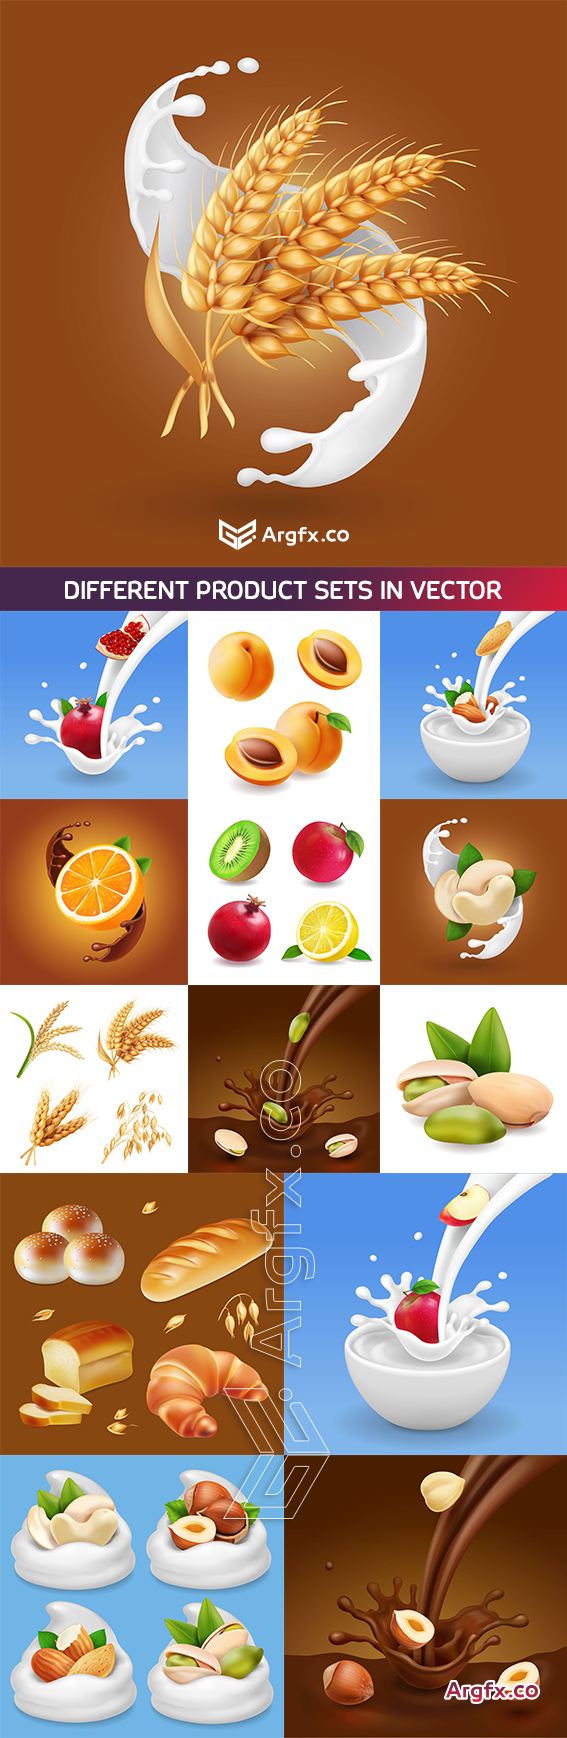  Different product sets in vector, pistachio nut in liquid chocolate, berries in milk splash, bread, bakery